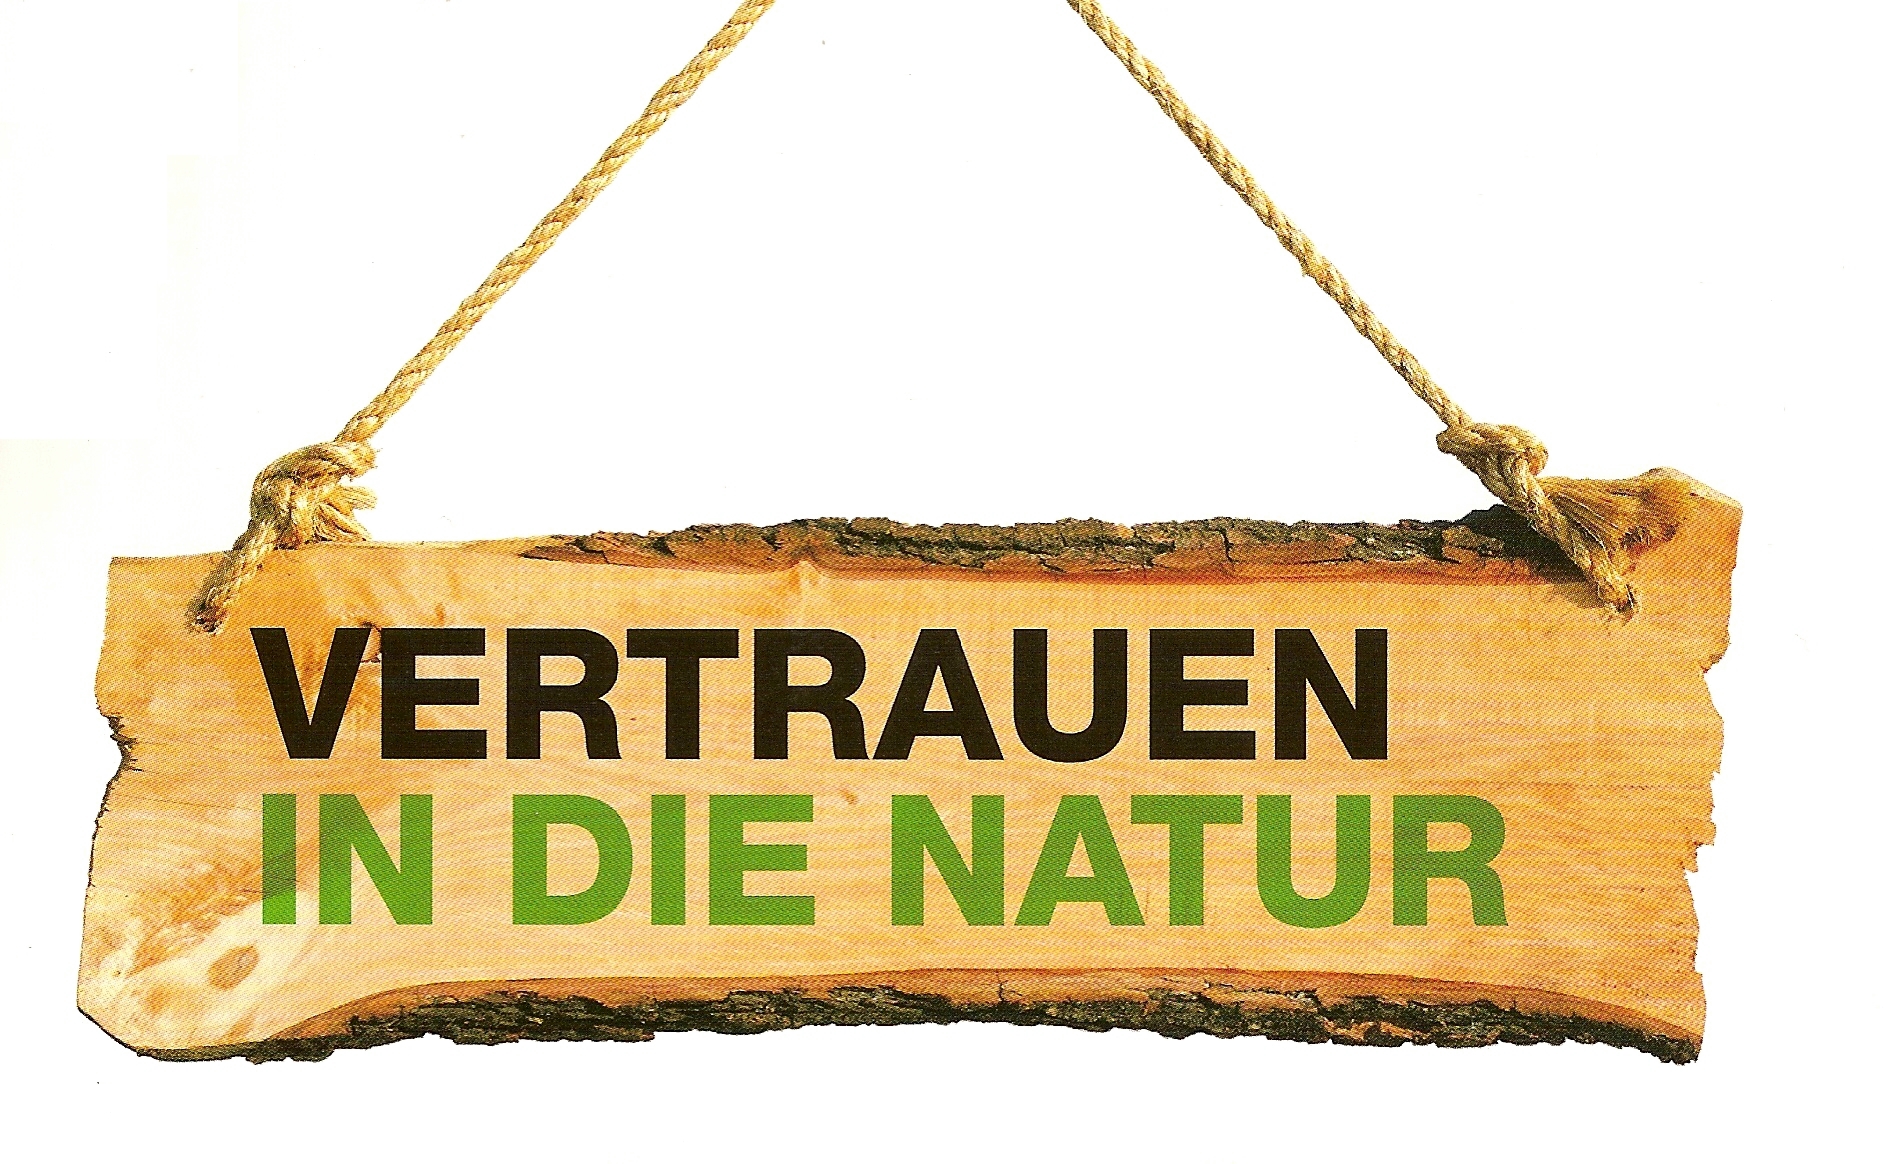 Vertrauen in die Natur. Ökologisches Baufachgeschäft Münster